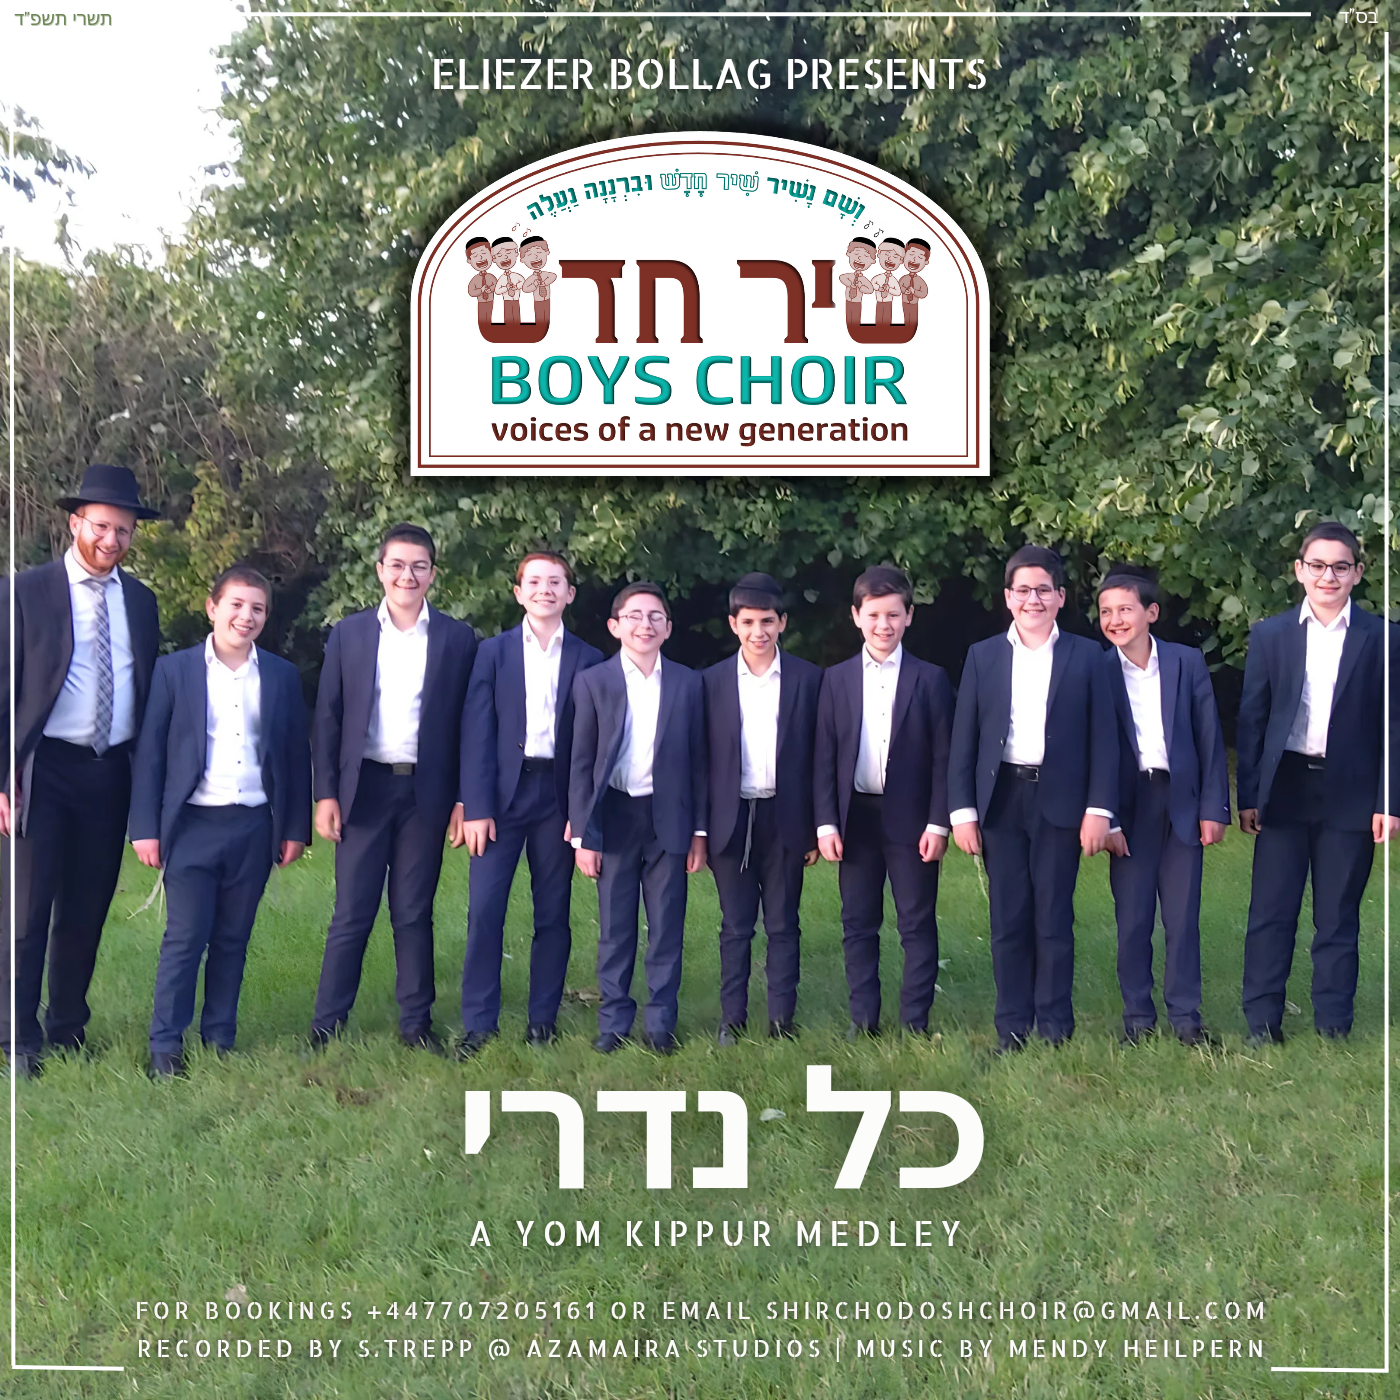 Shir Chodosh Boys Choir - Yom Kippur Medley (Single)